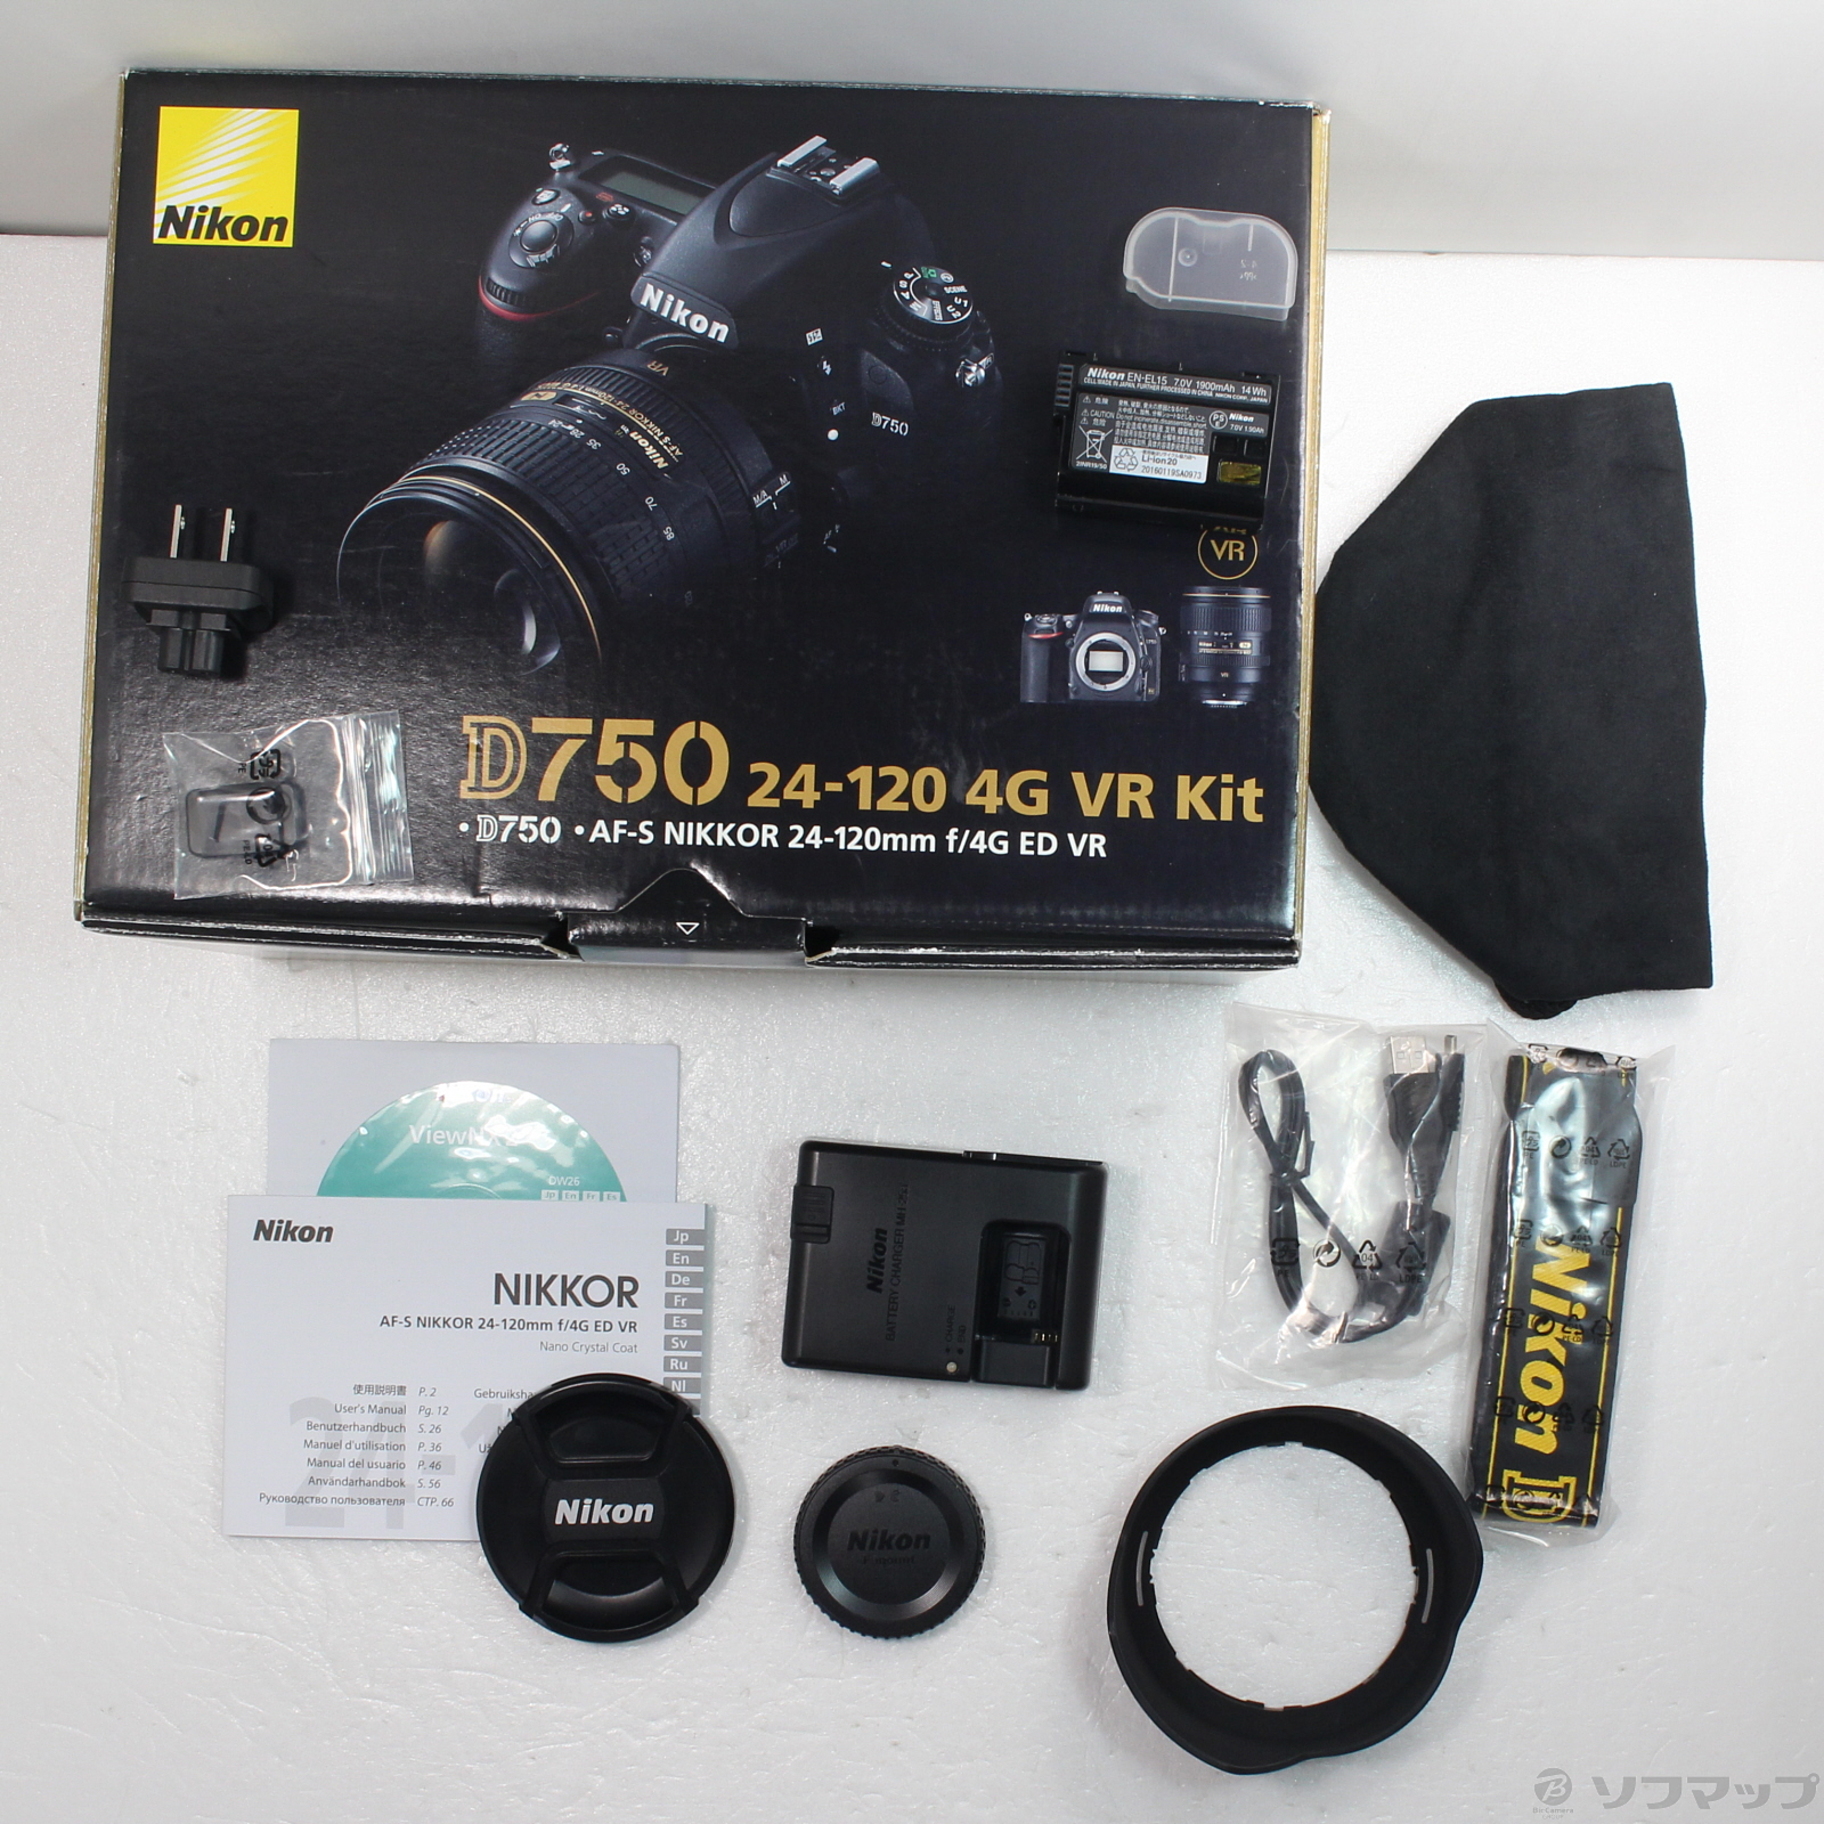 ニコンNikon D750 24-120 4G VR Kit - デジタルカメラ